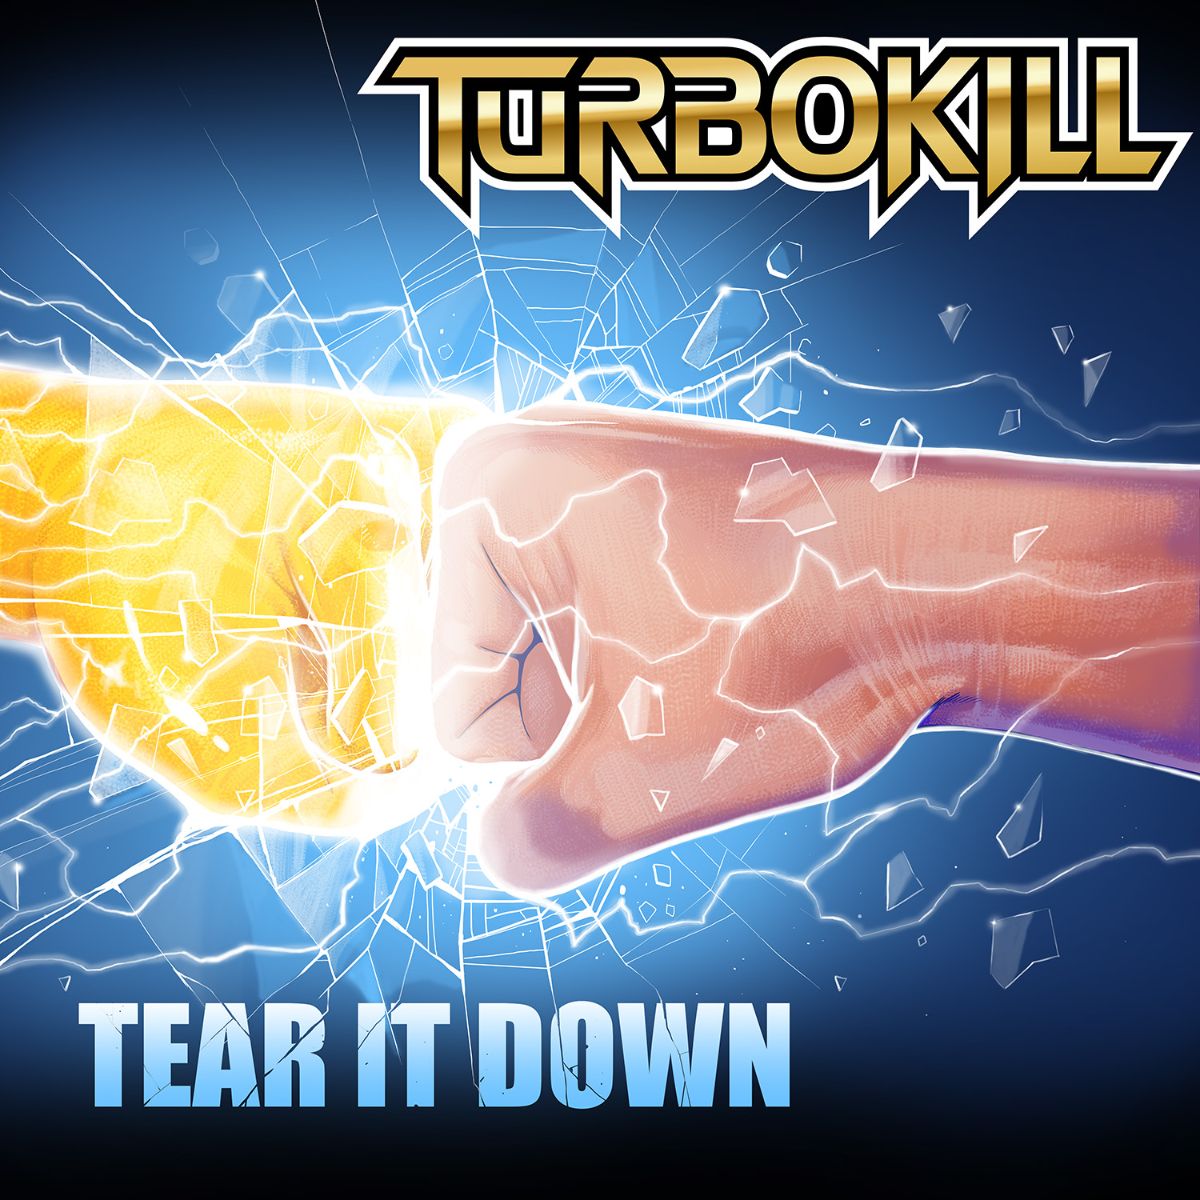 TurbokillTearItDown.jpg